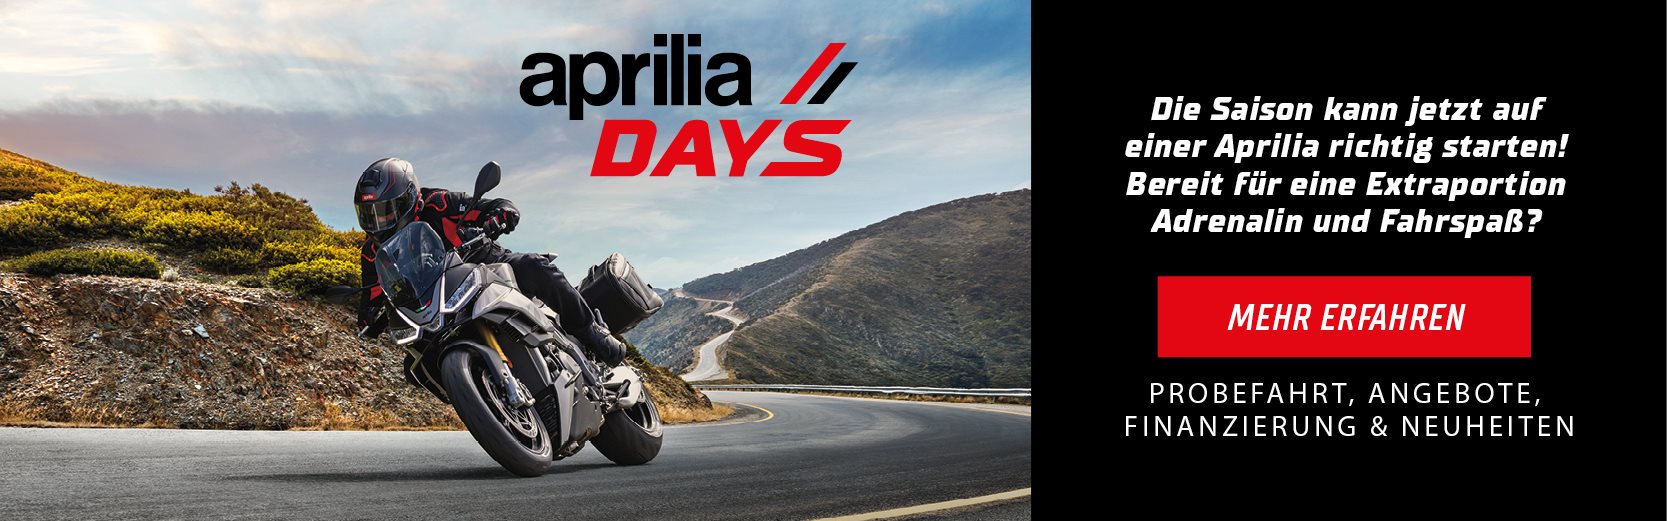 Aprilia Thunder Days sicher Dir die exklusiven Preis- Vorteile bei vielen Aprilia Modellen